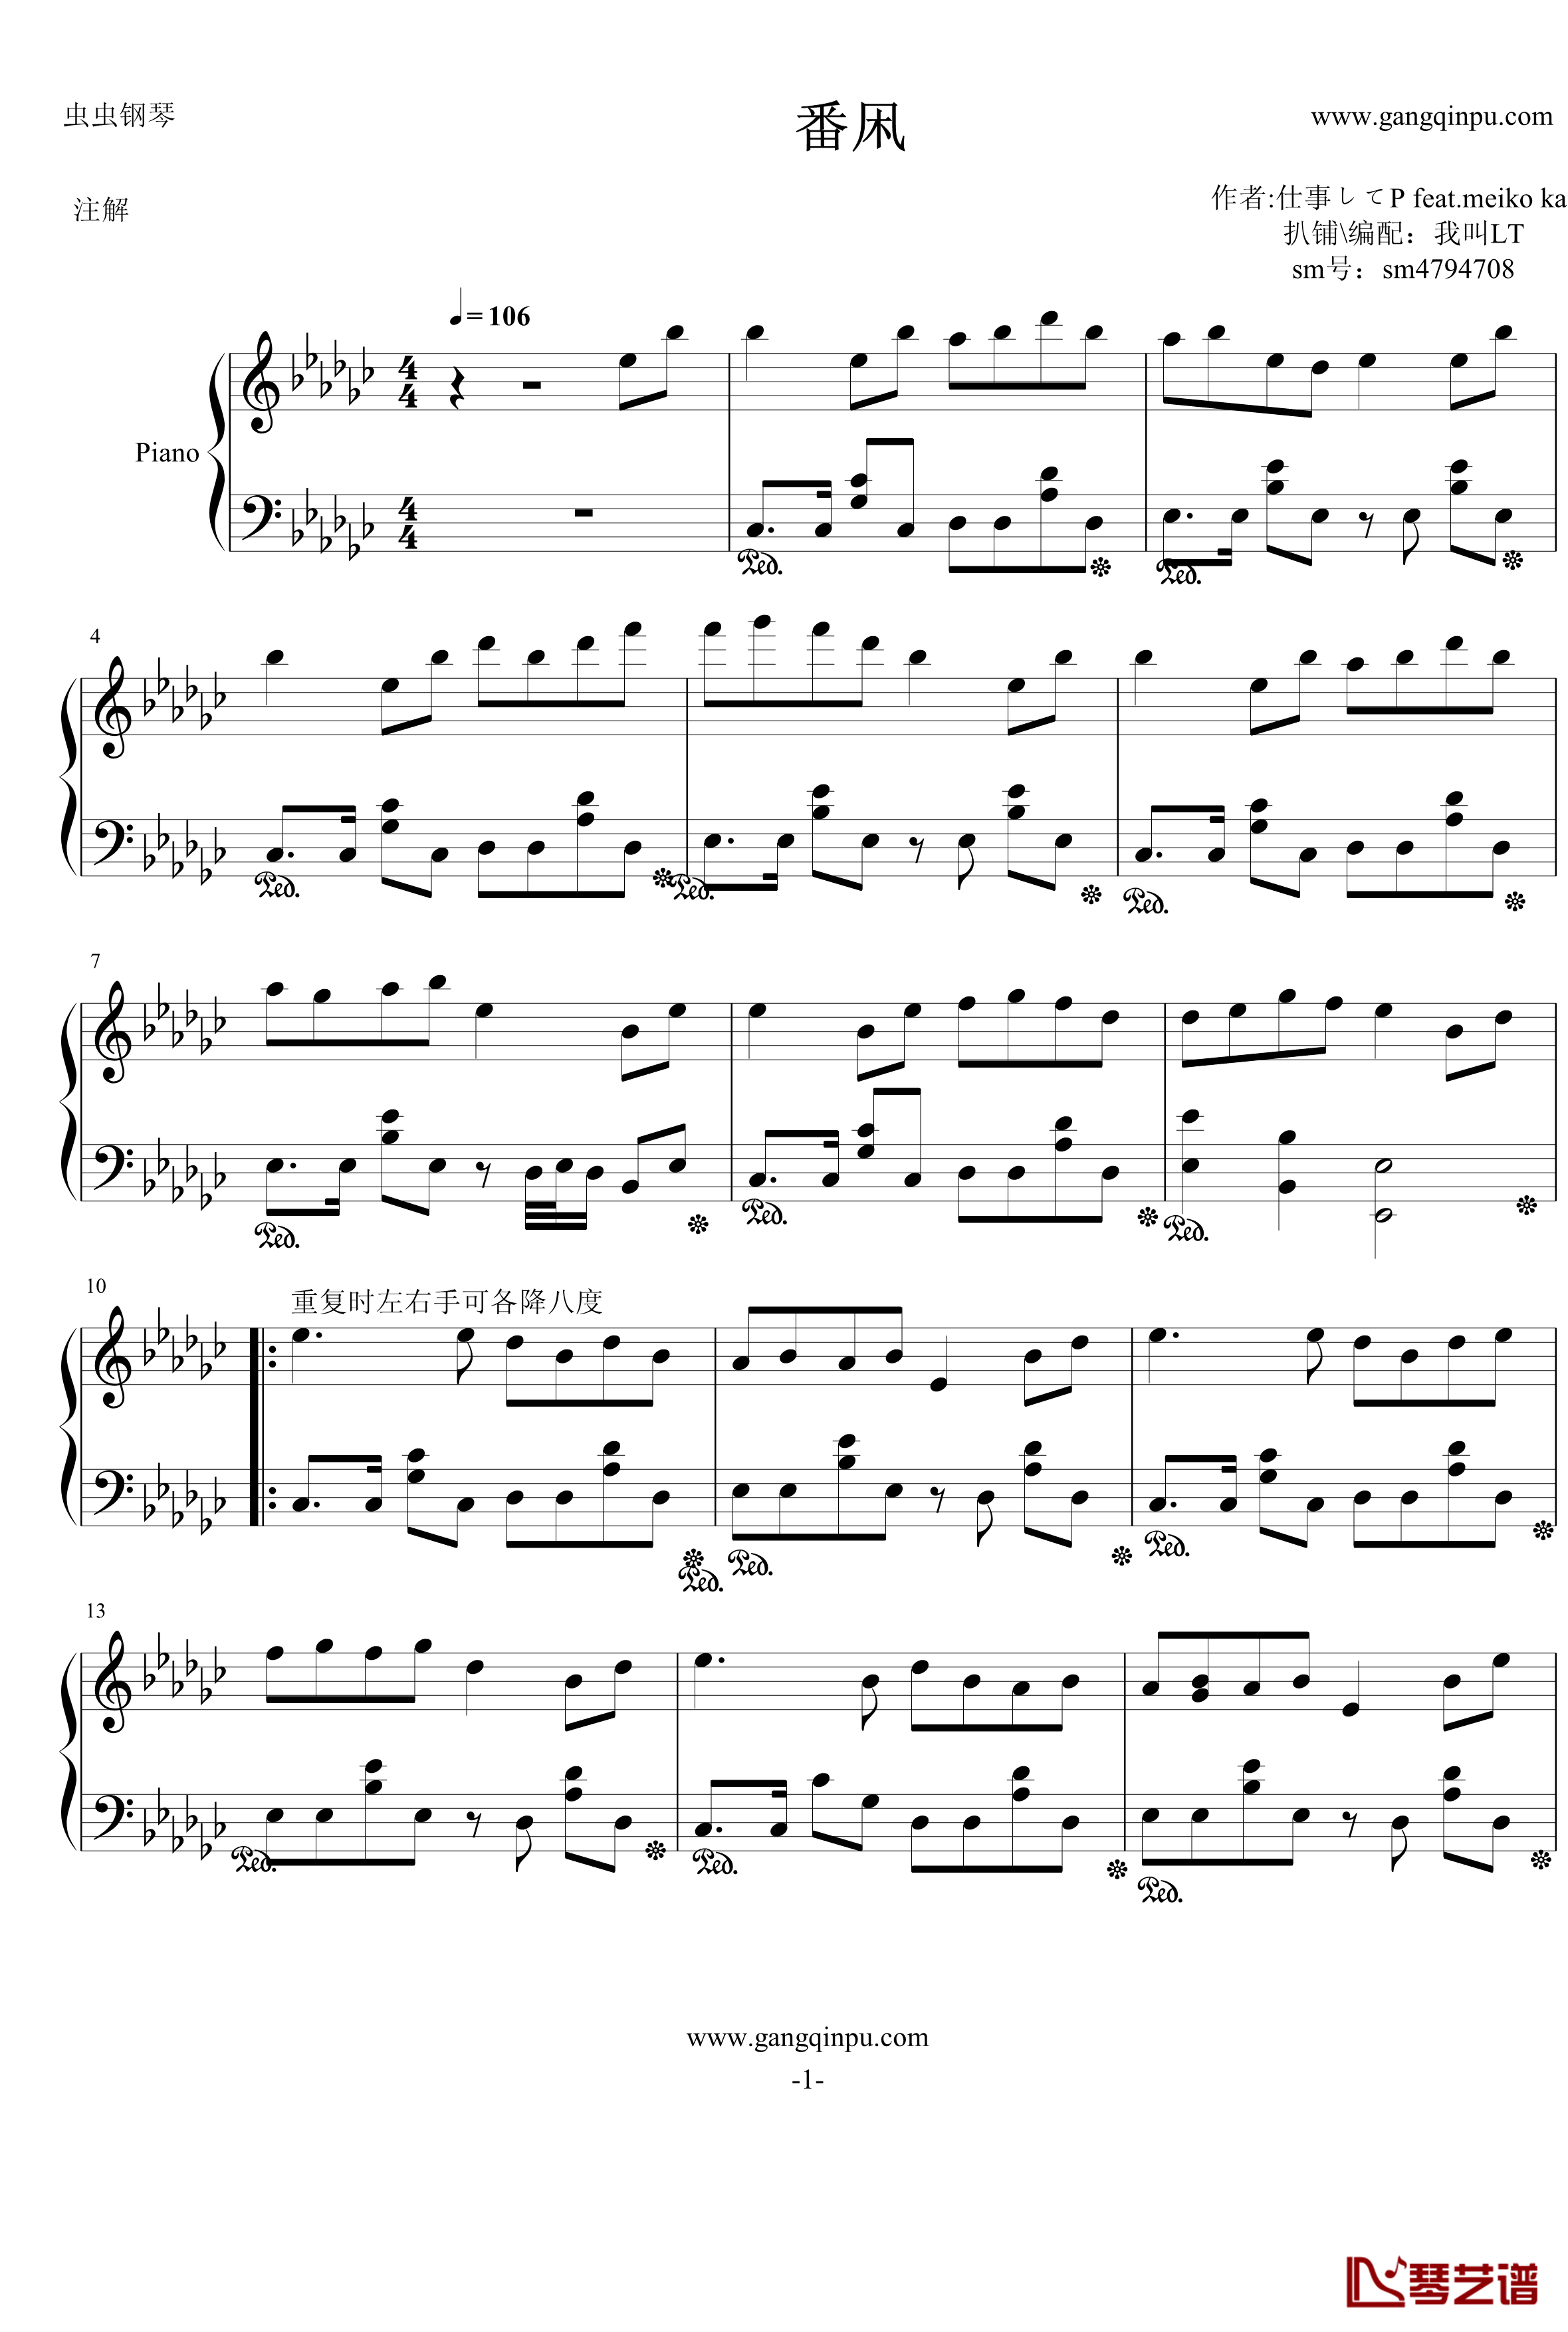 番凩钢琴谱-MEIKO-12539KAITO-初音未来1